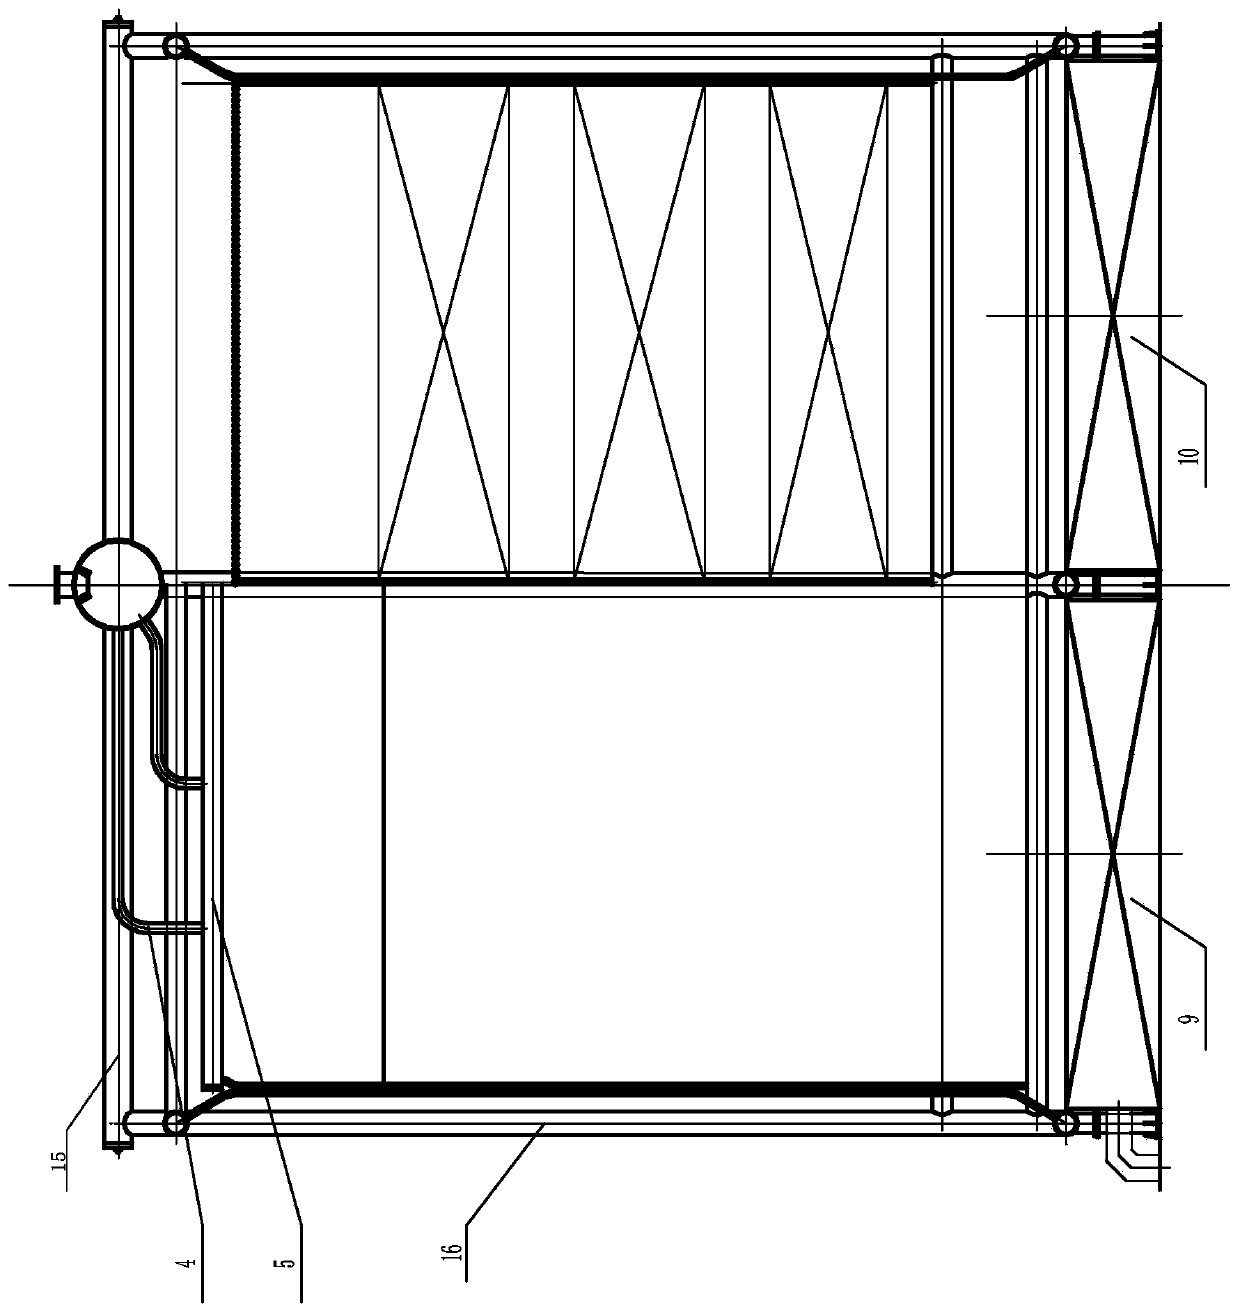 Large-capacity longitudinal corner tube boiler